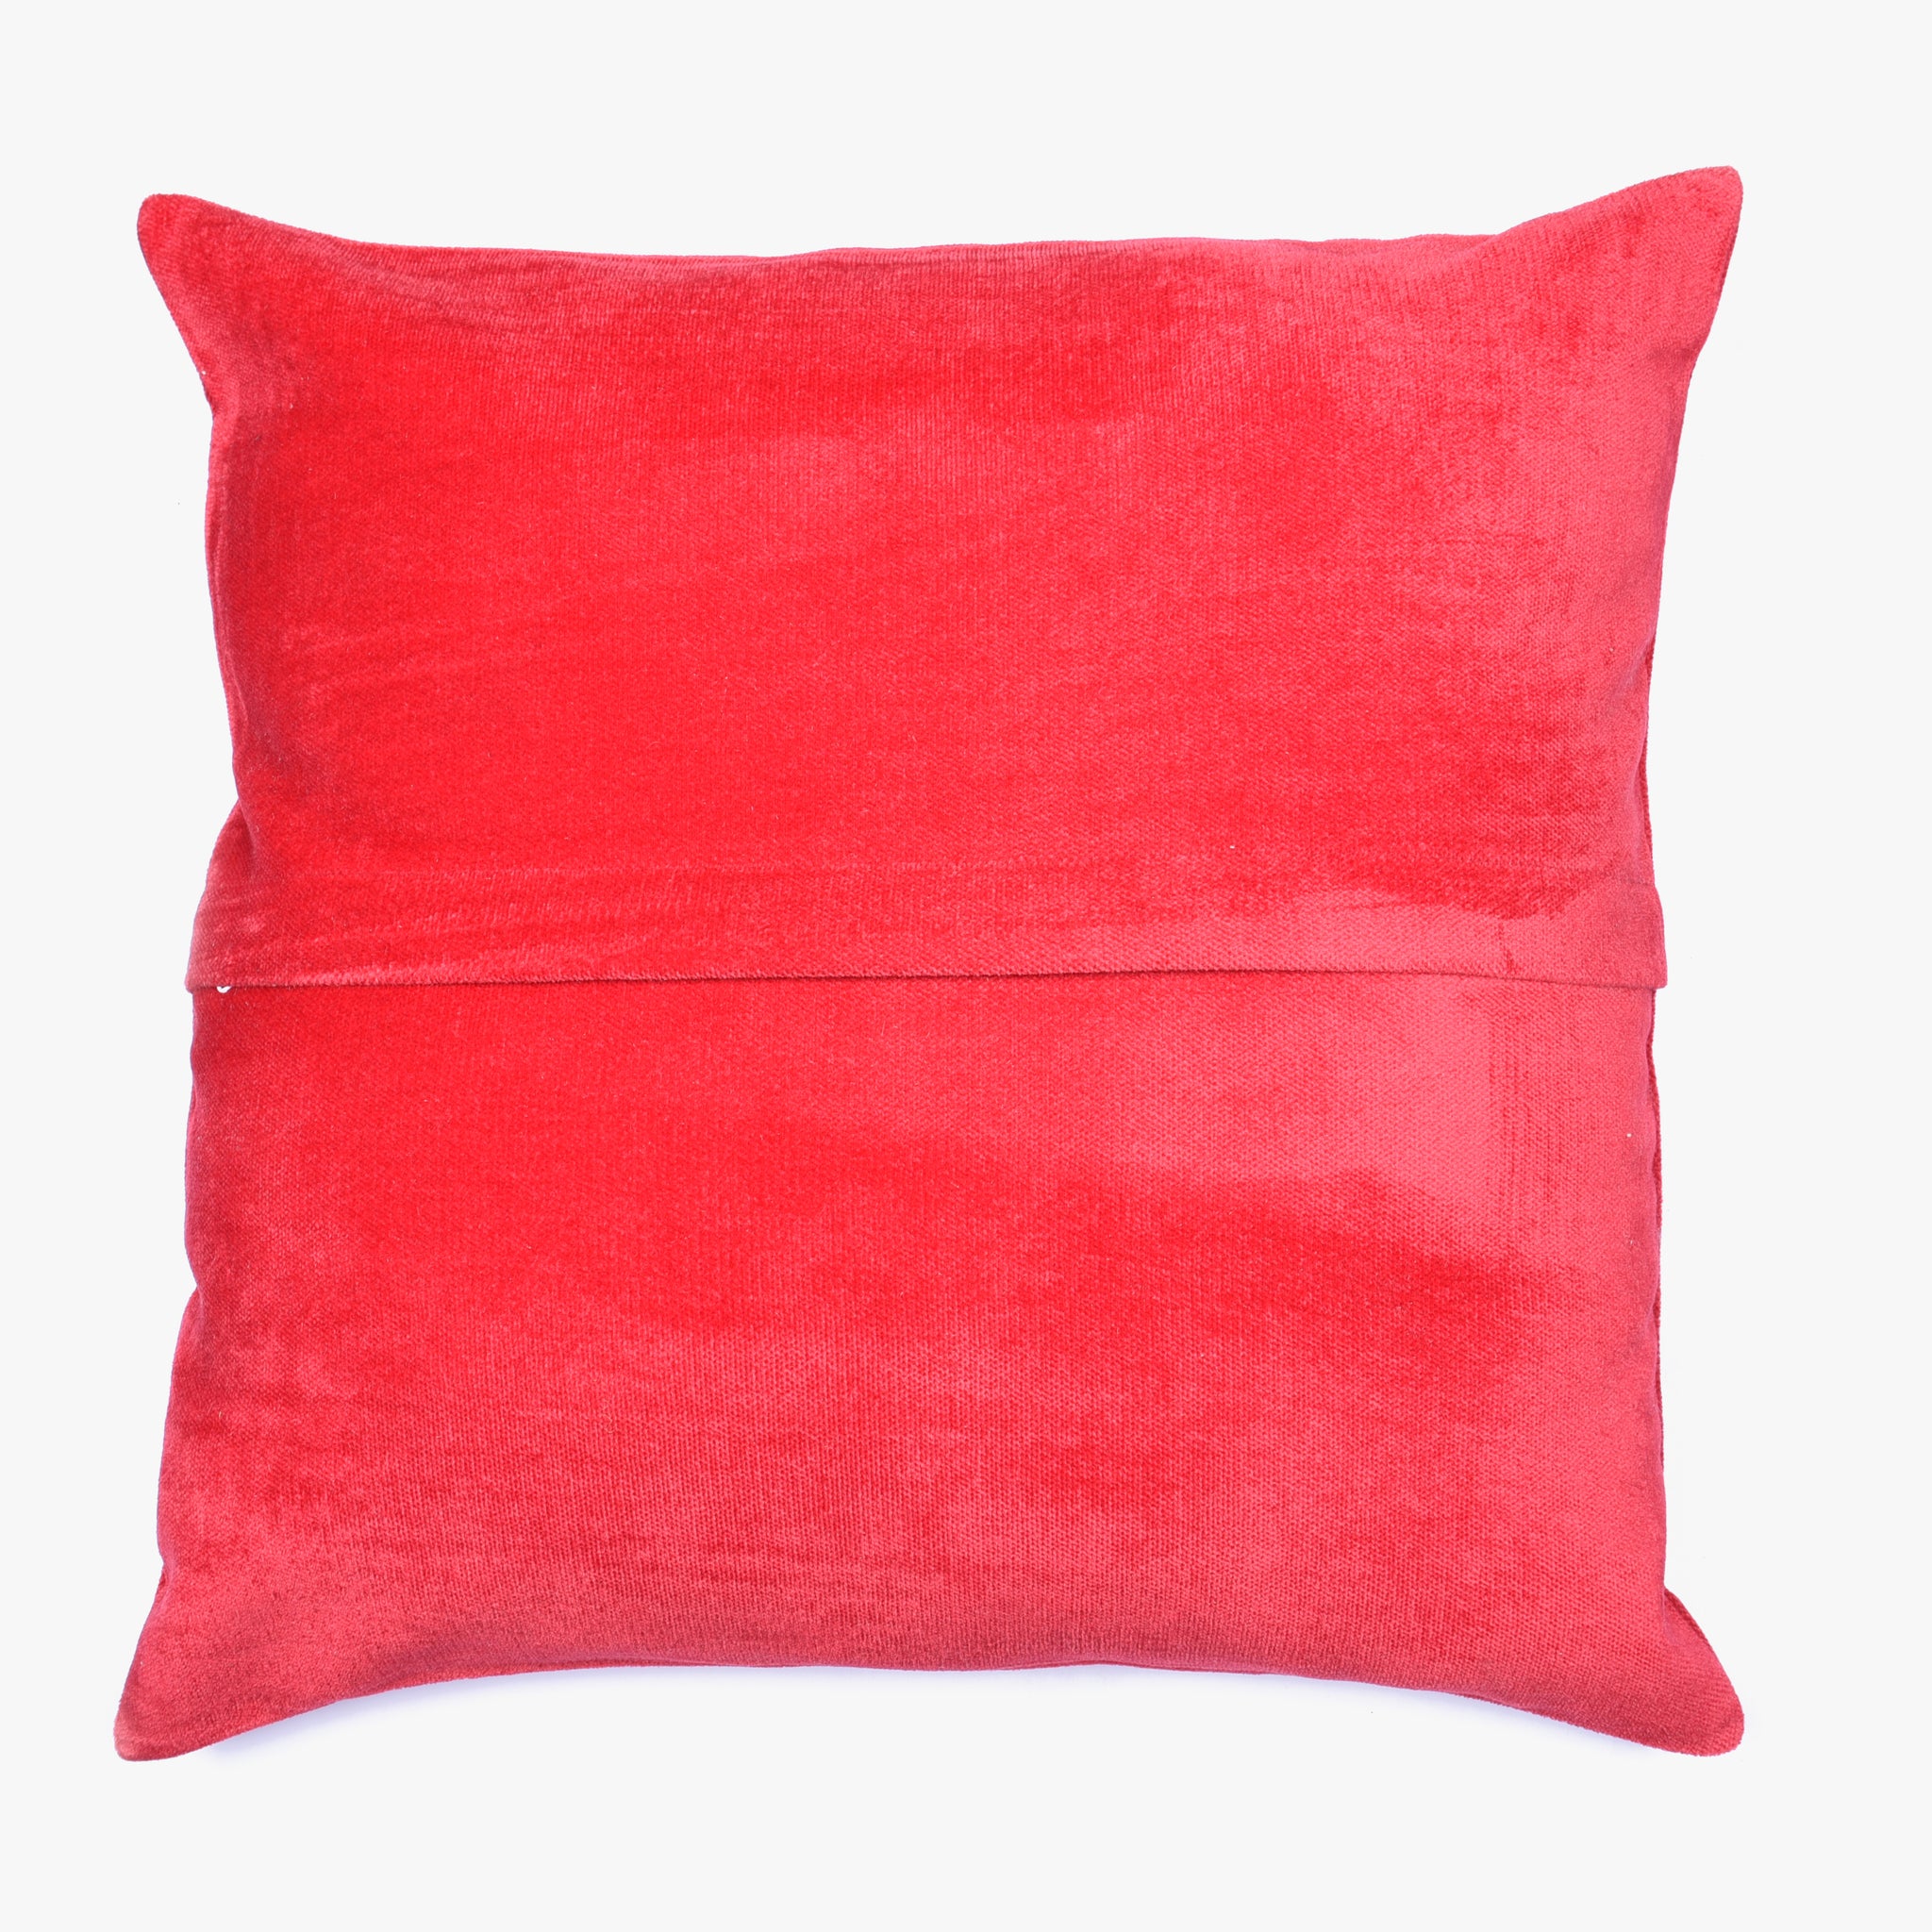 Red Velvet Cushion Cover